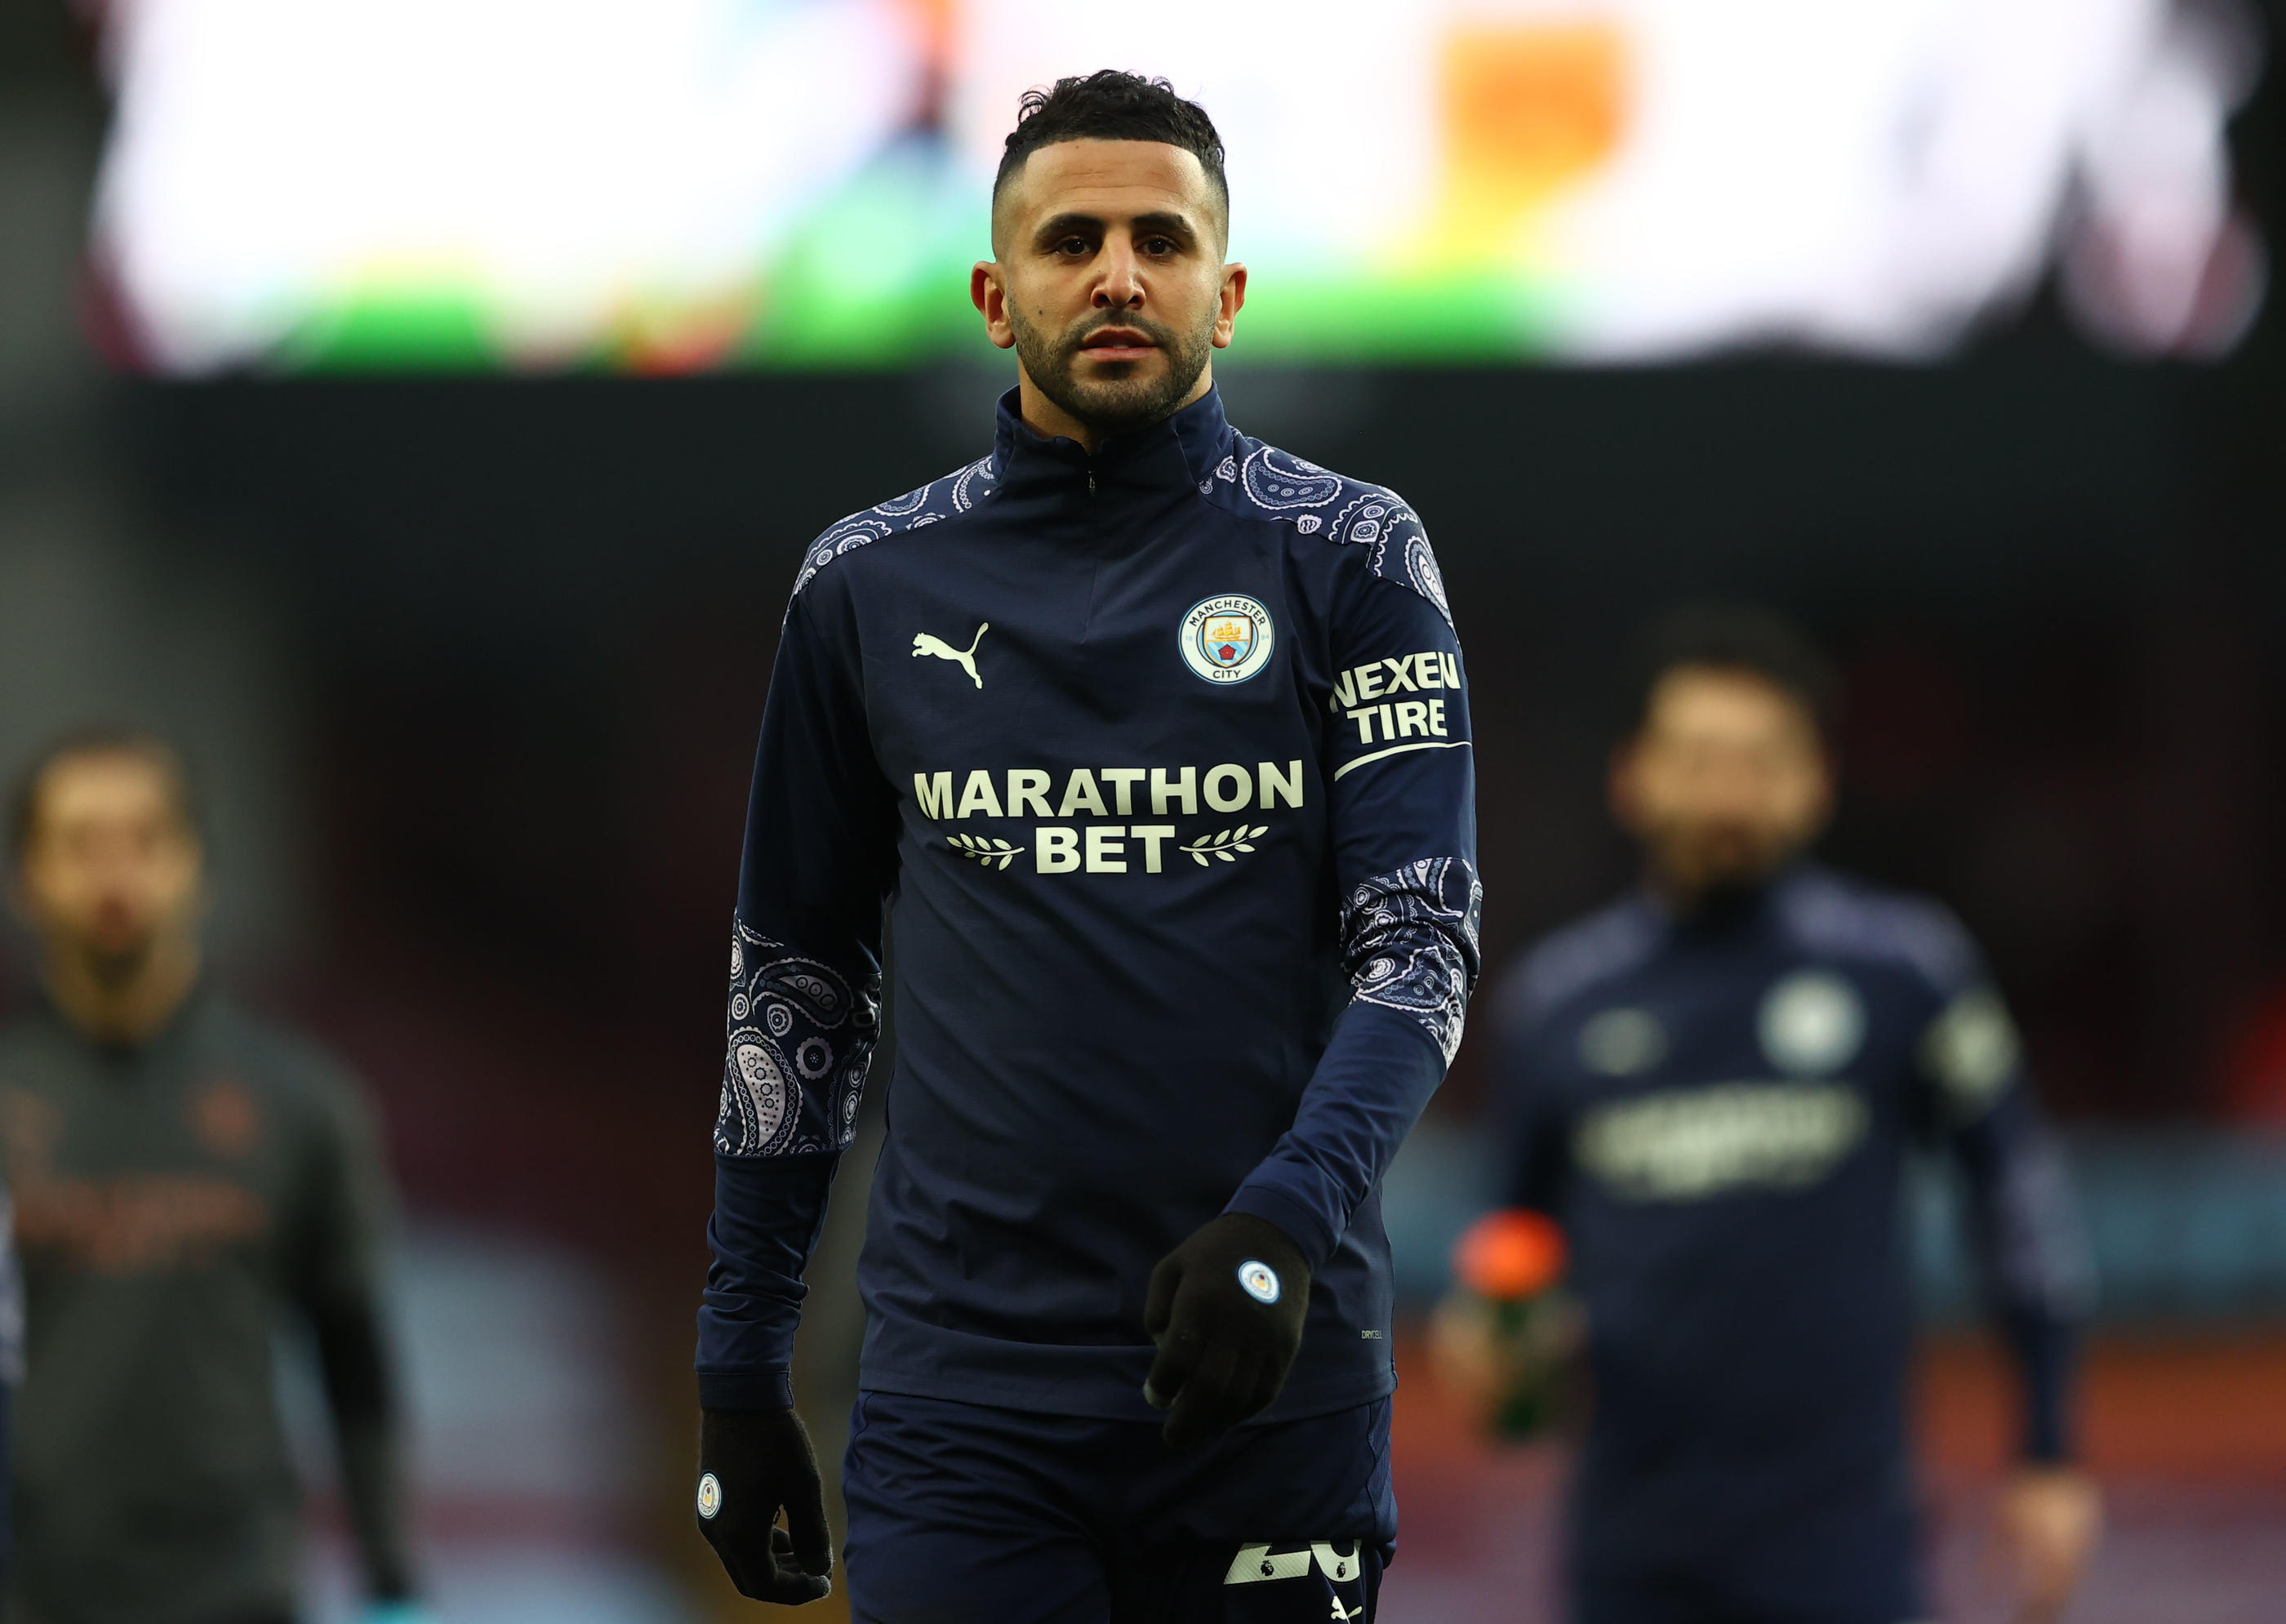 L'international algérien Riyad Mahrez a rejoint la Premier League en 2014, à Leicester et Manchester City depuis 2018. Il aura bientôt un stade à son nom dans sa ville natale de Sarcelles (Val-d'Oise). Reuters/Michael Steele